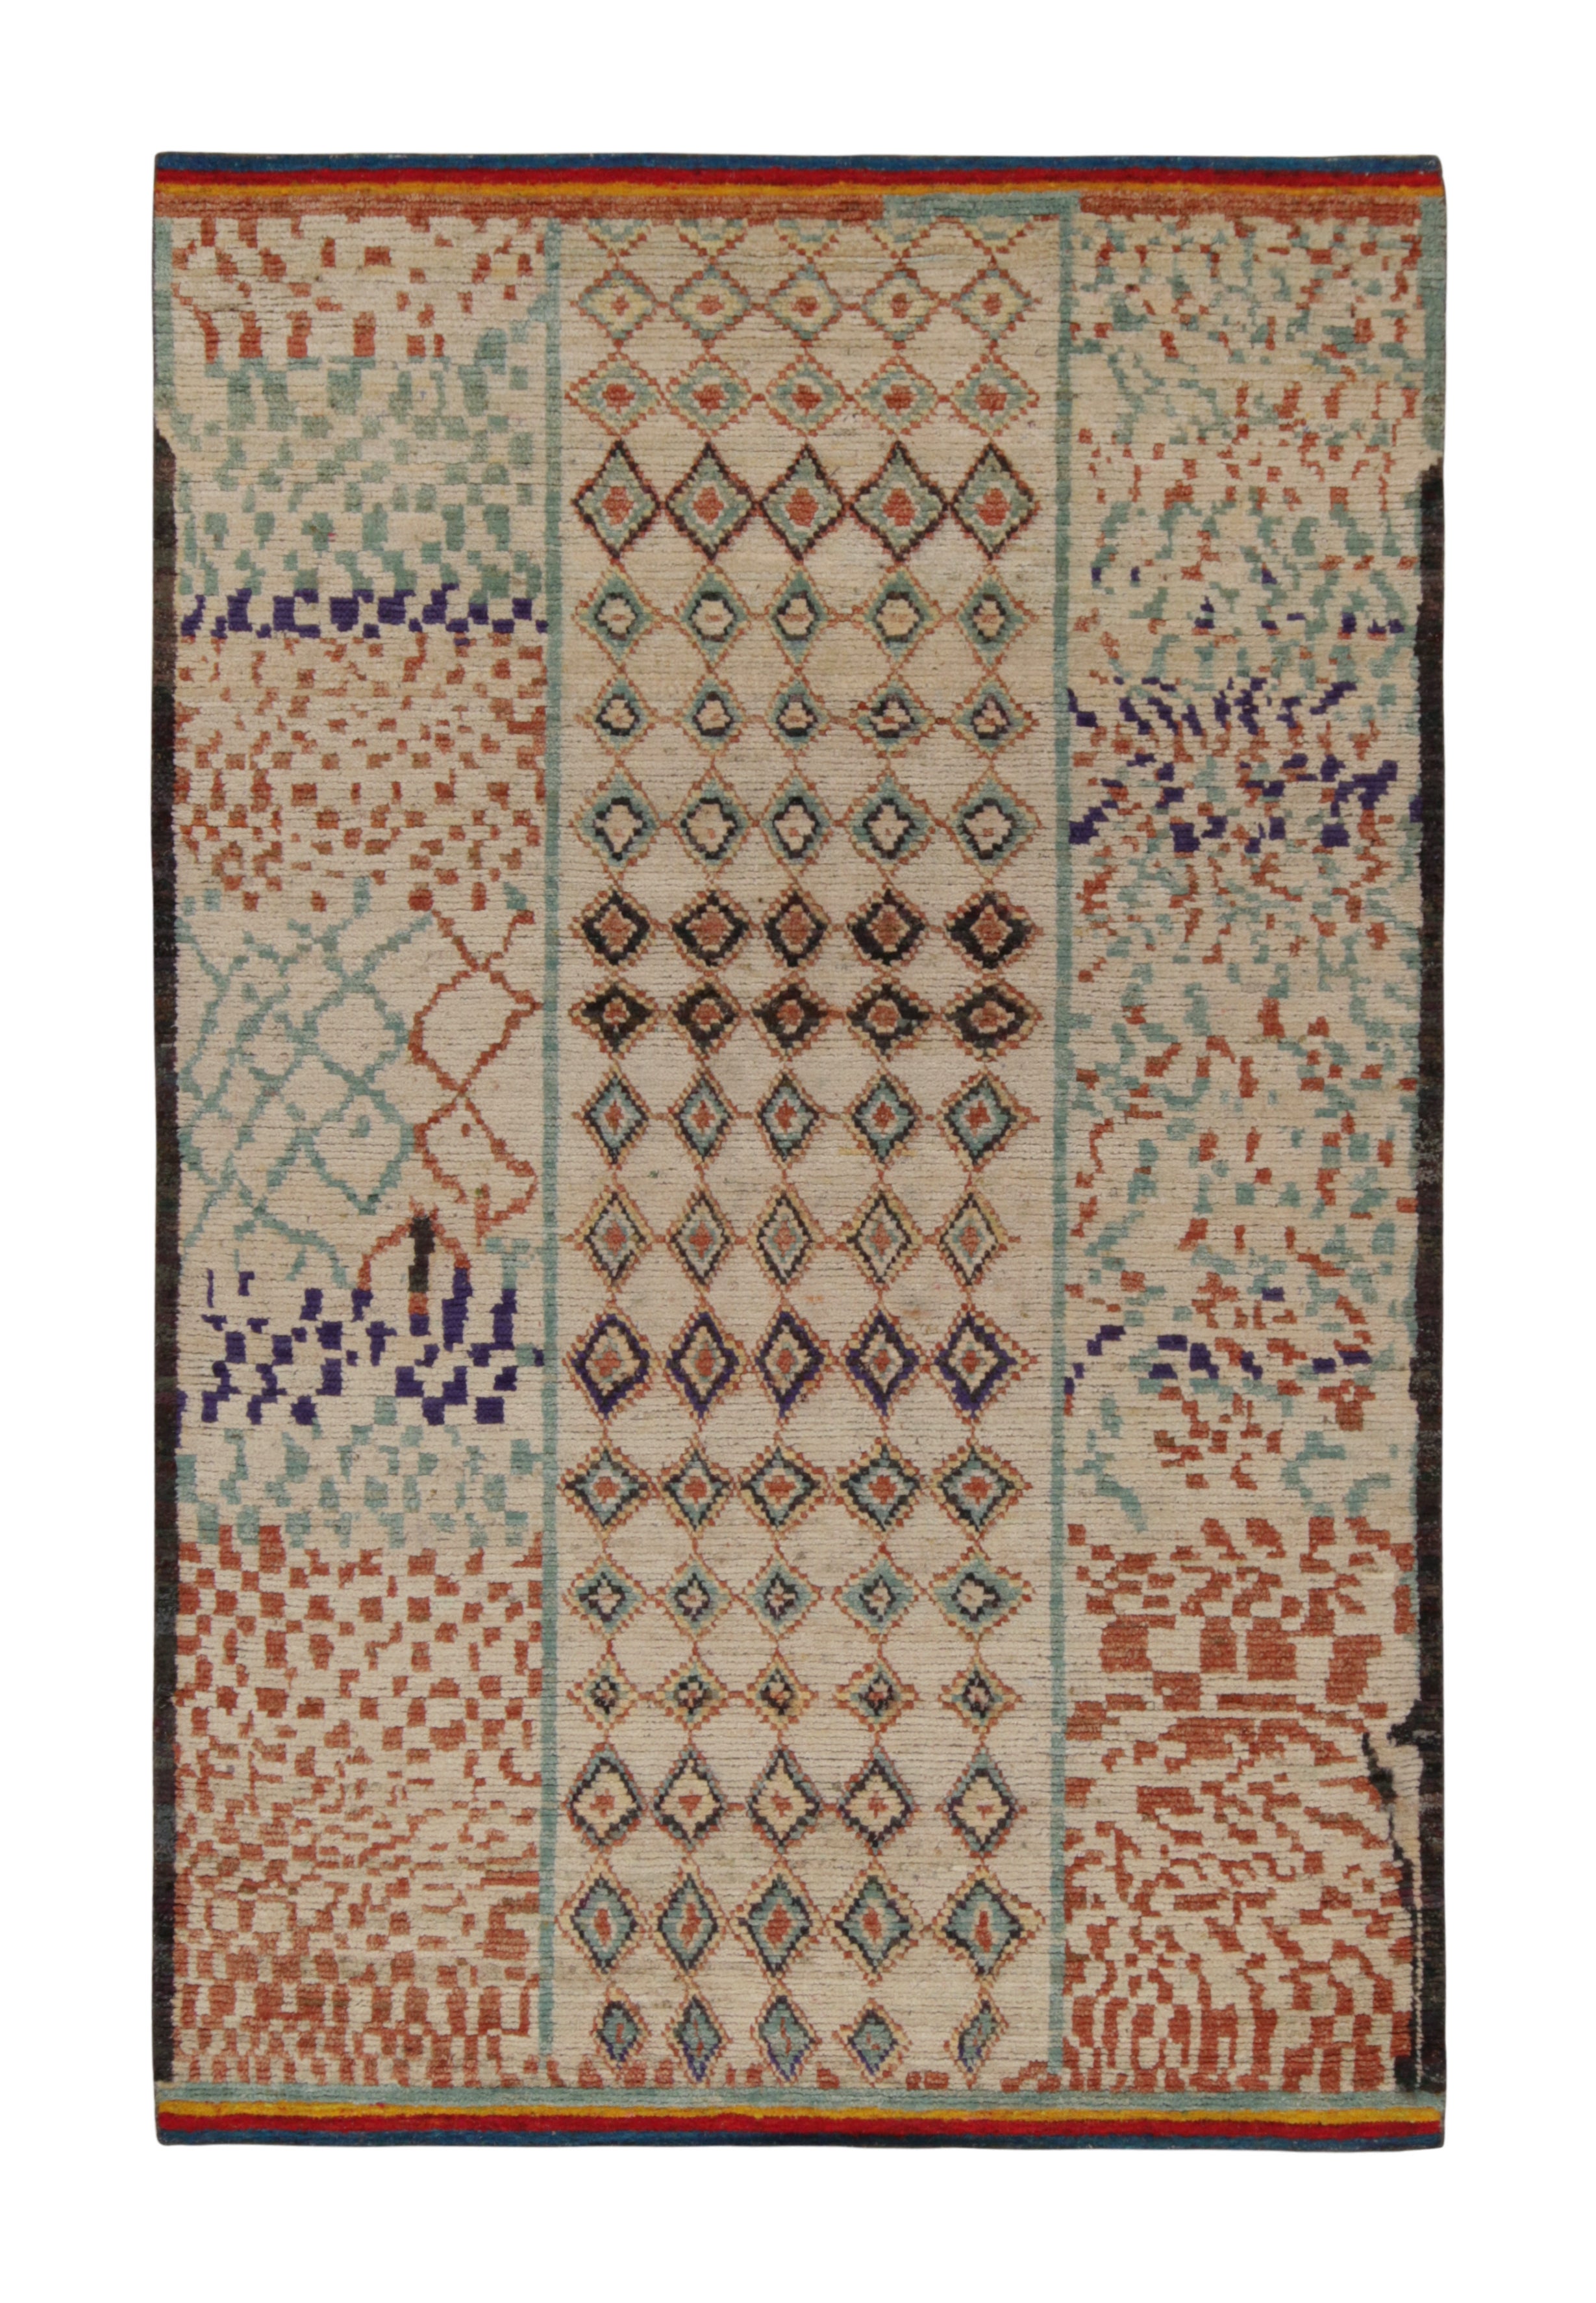 Marokkanischer Teppich von Rug & Kilim in Beige, Rot und Blau mit geometrischen Mustern